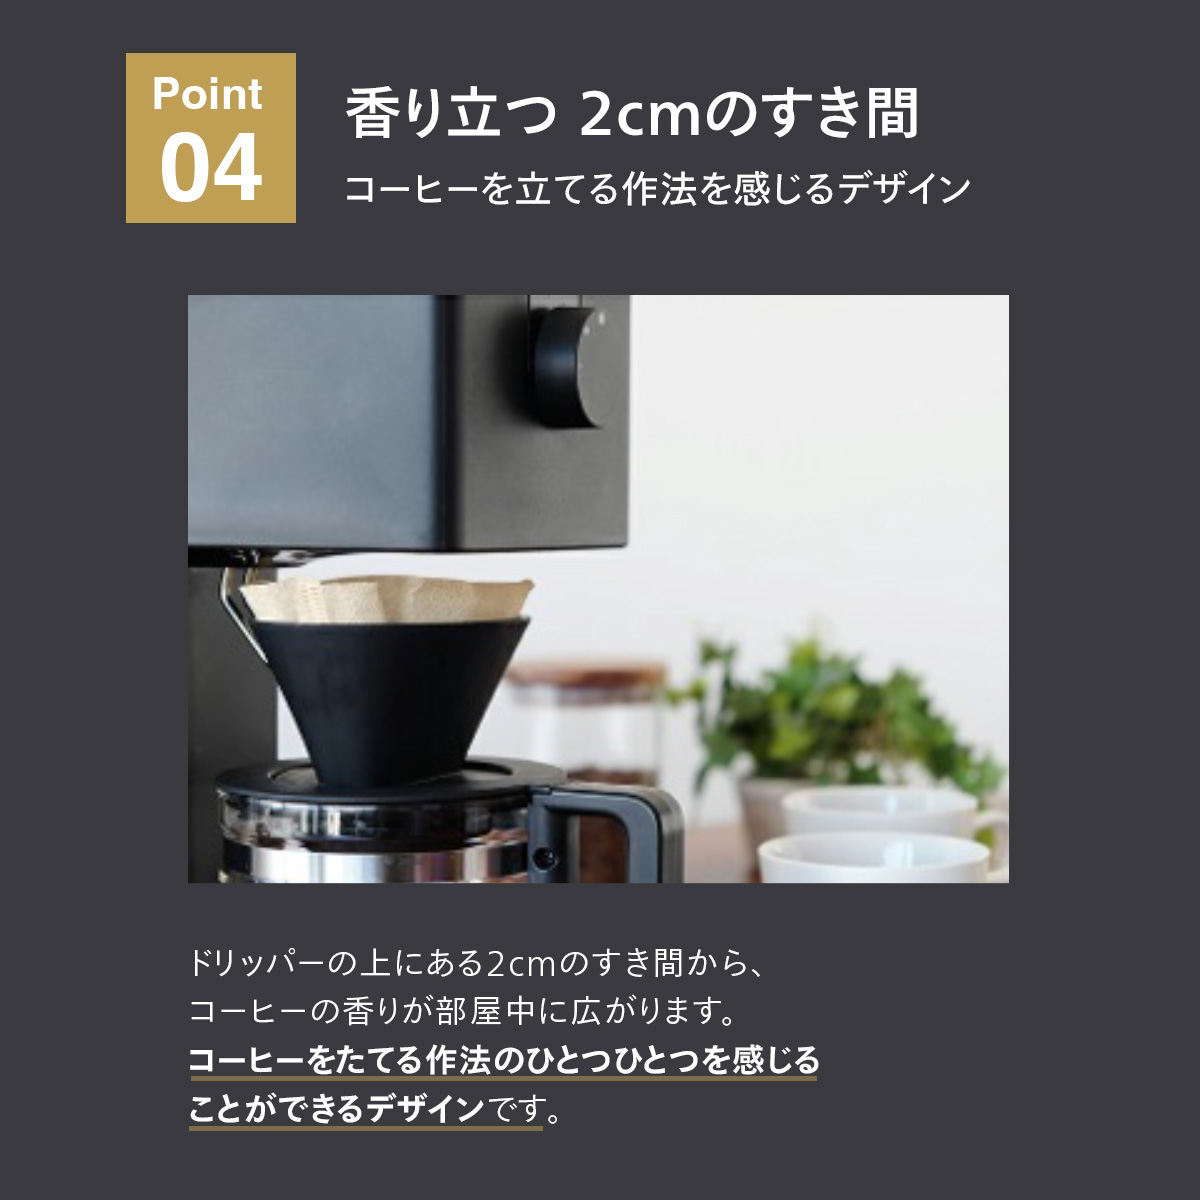 ツインバード 全自動コーヒーメーカー 6杯用 CM-D465B ミル付き コーン式 日本製 ブラック